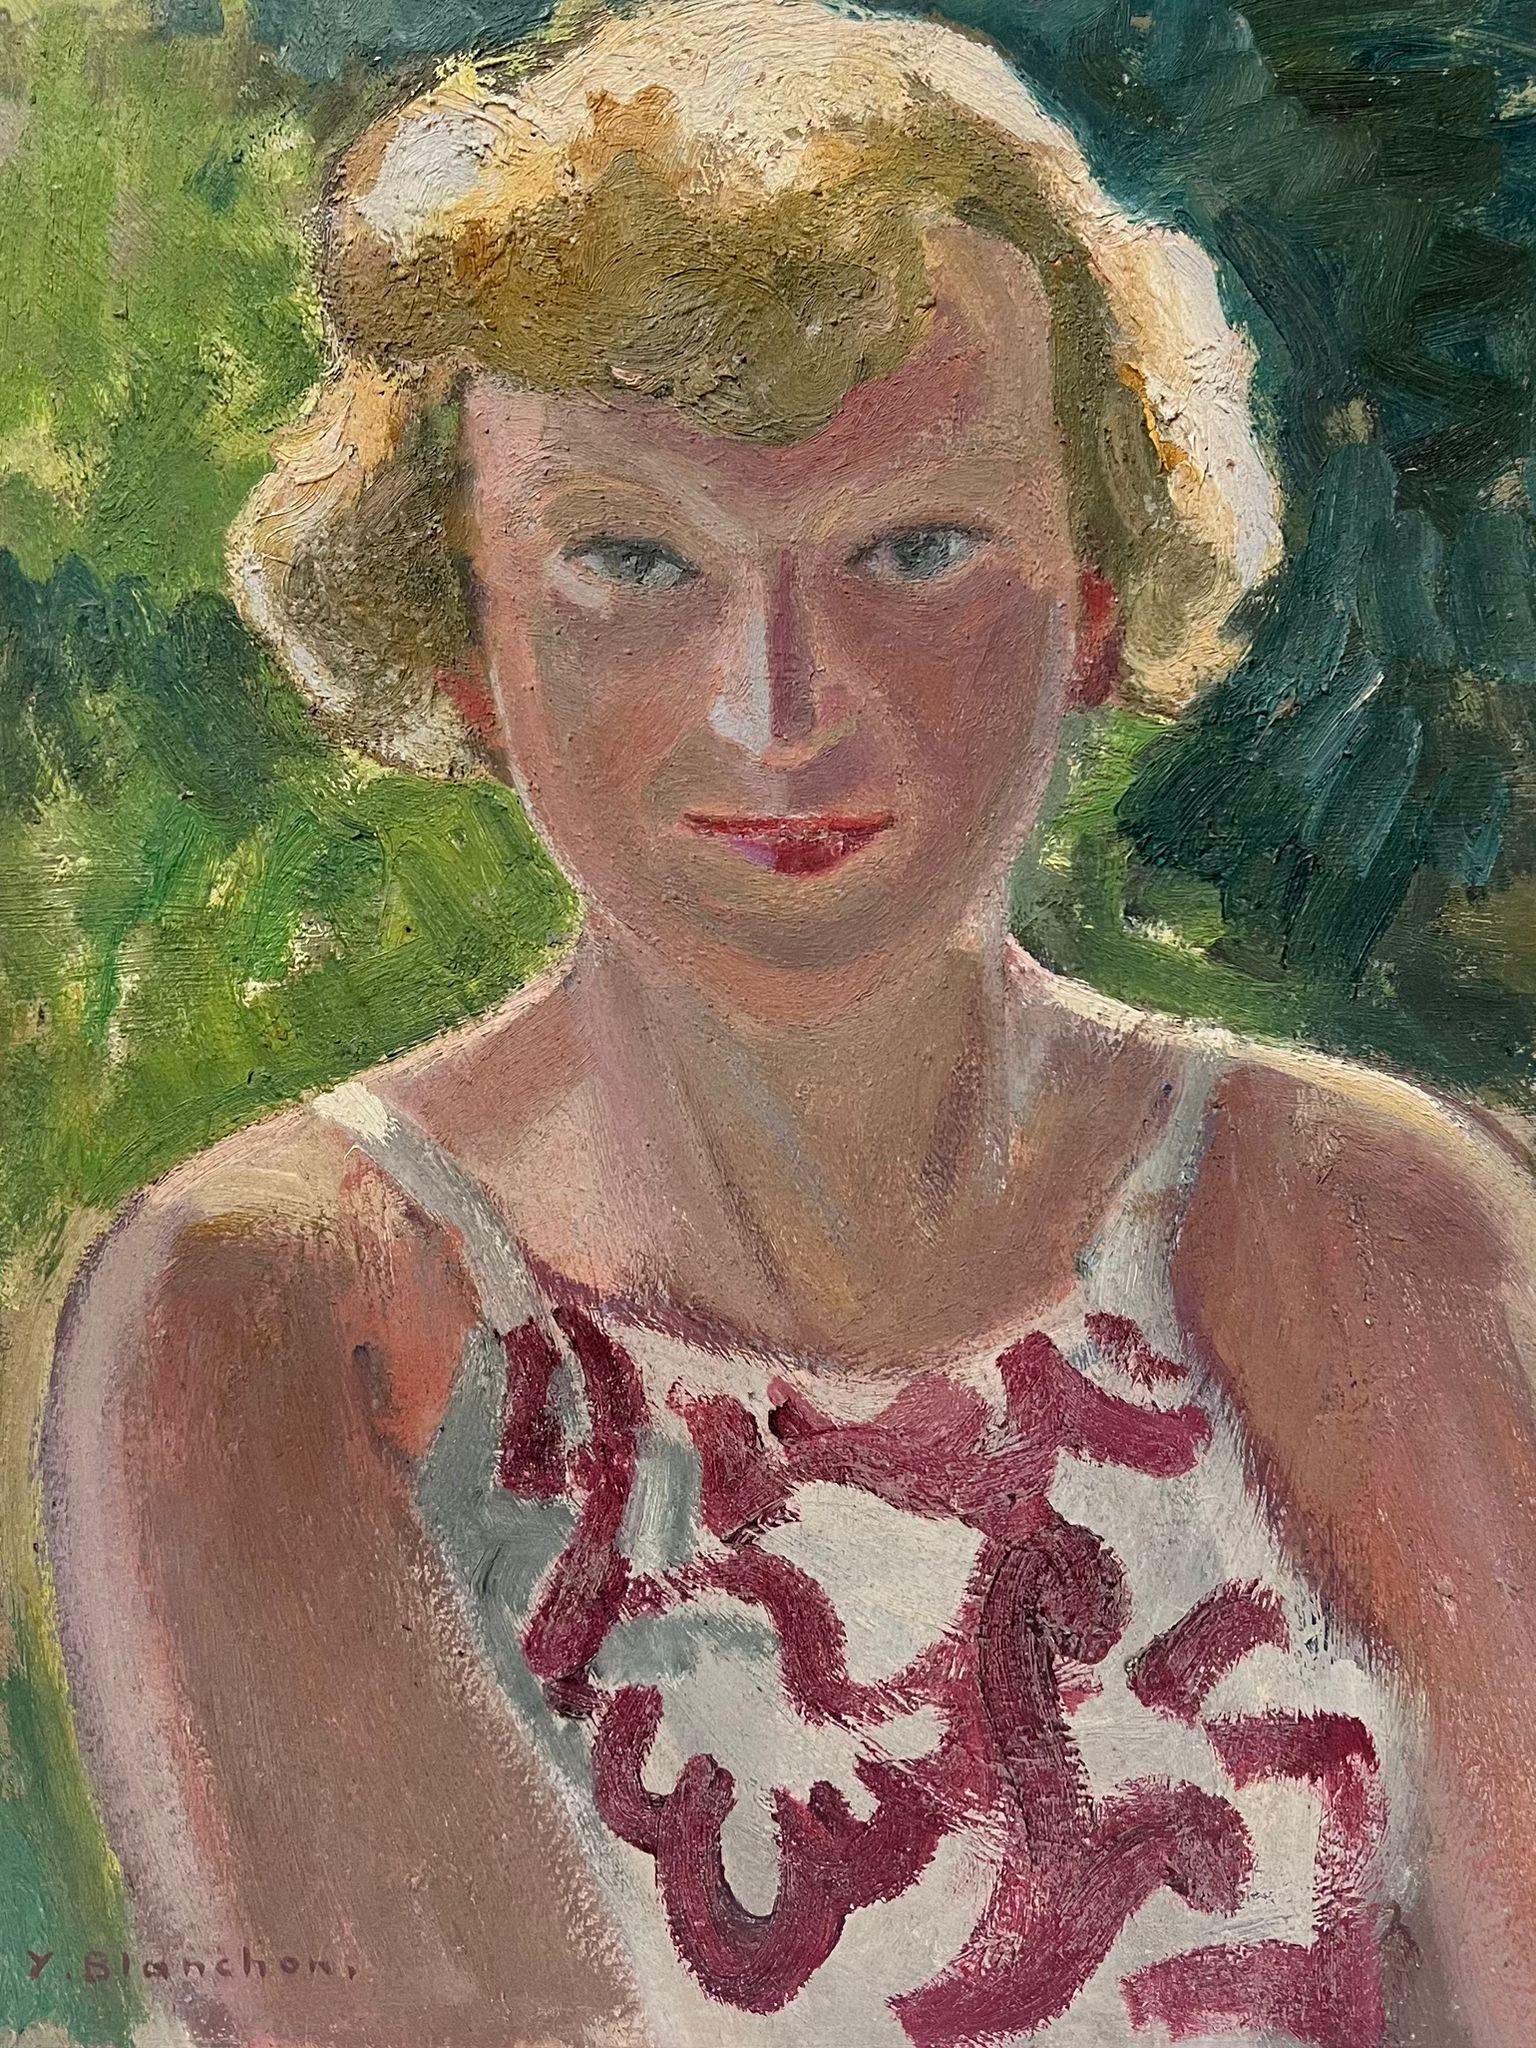 Blonde Dame in roter und weißer Weste, Porträt des französischen Impressionisten 1930er Jahre – Painting von Y. Blanchon